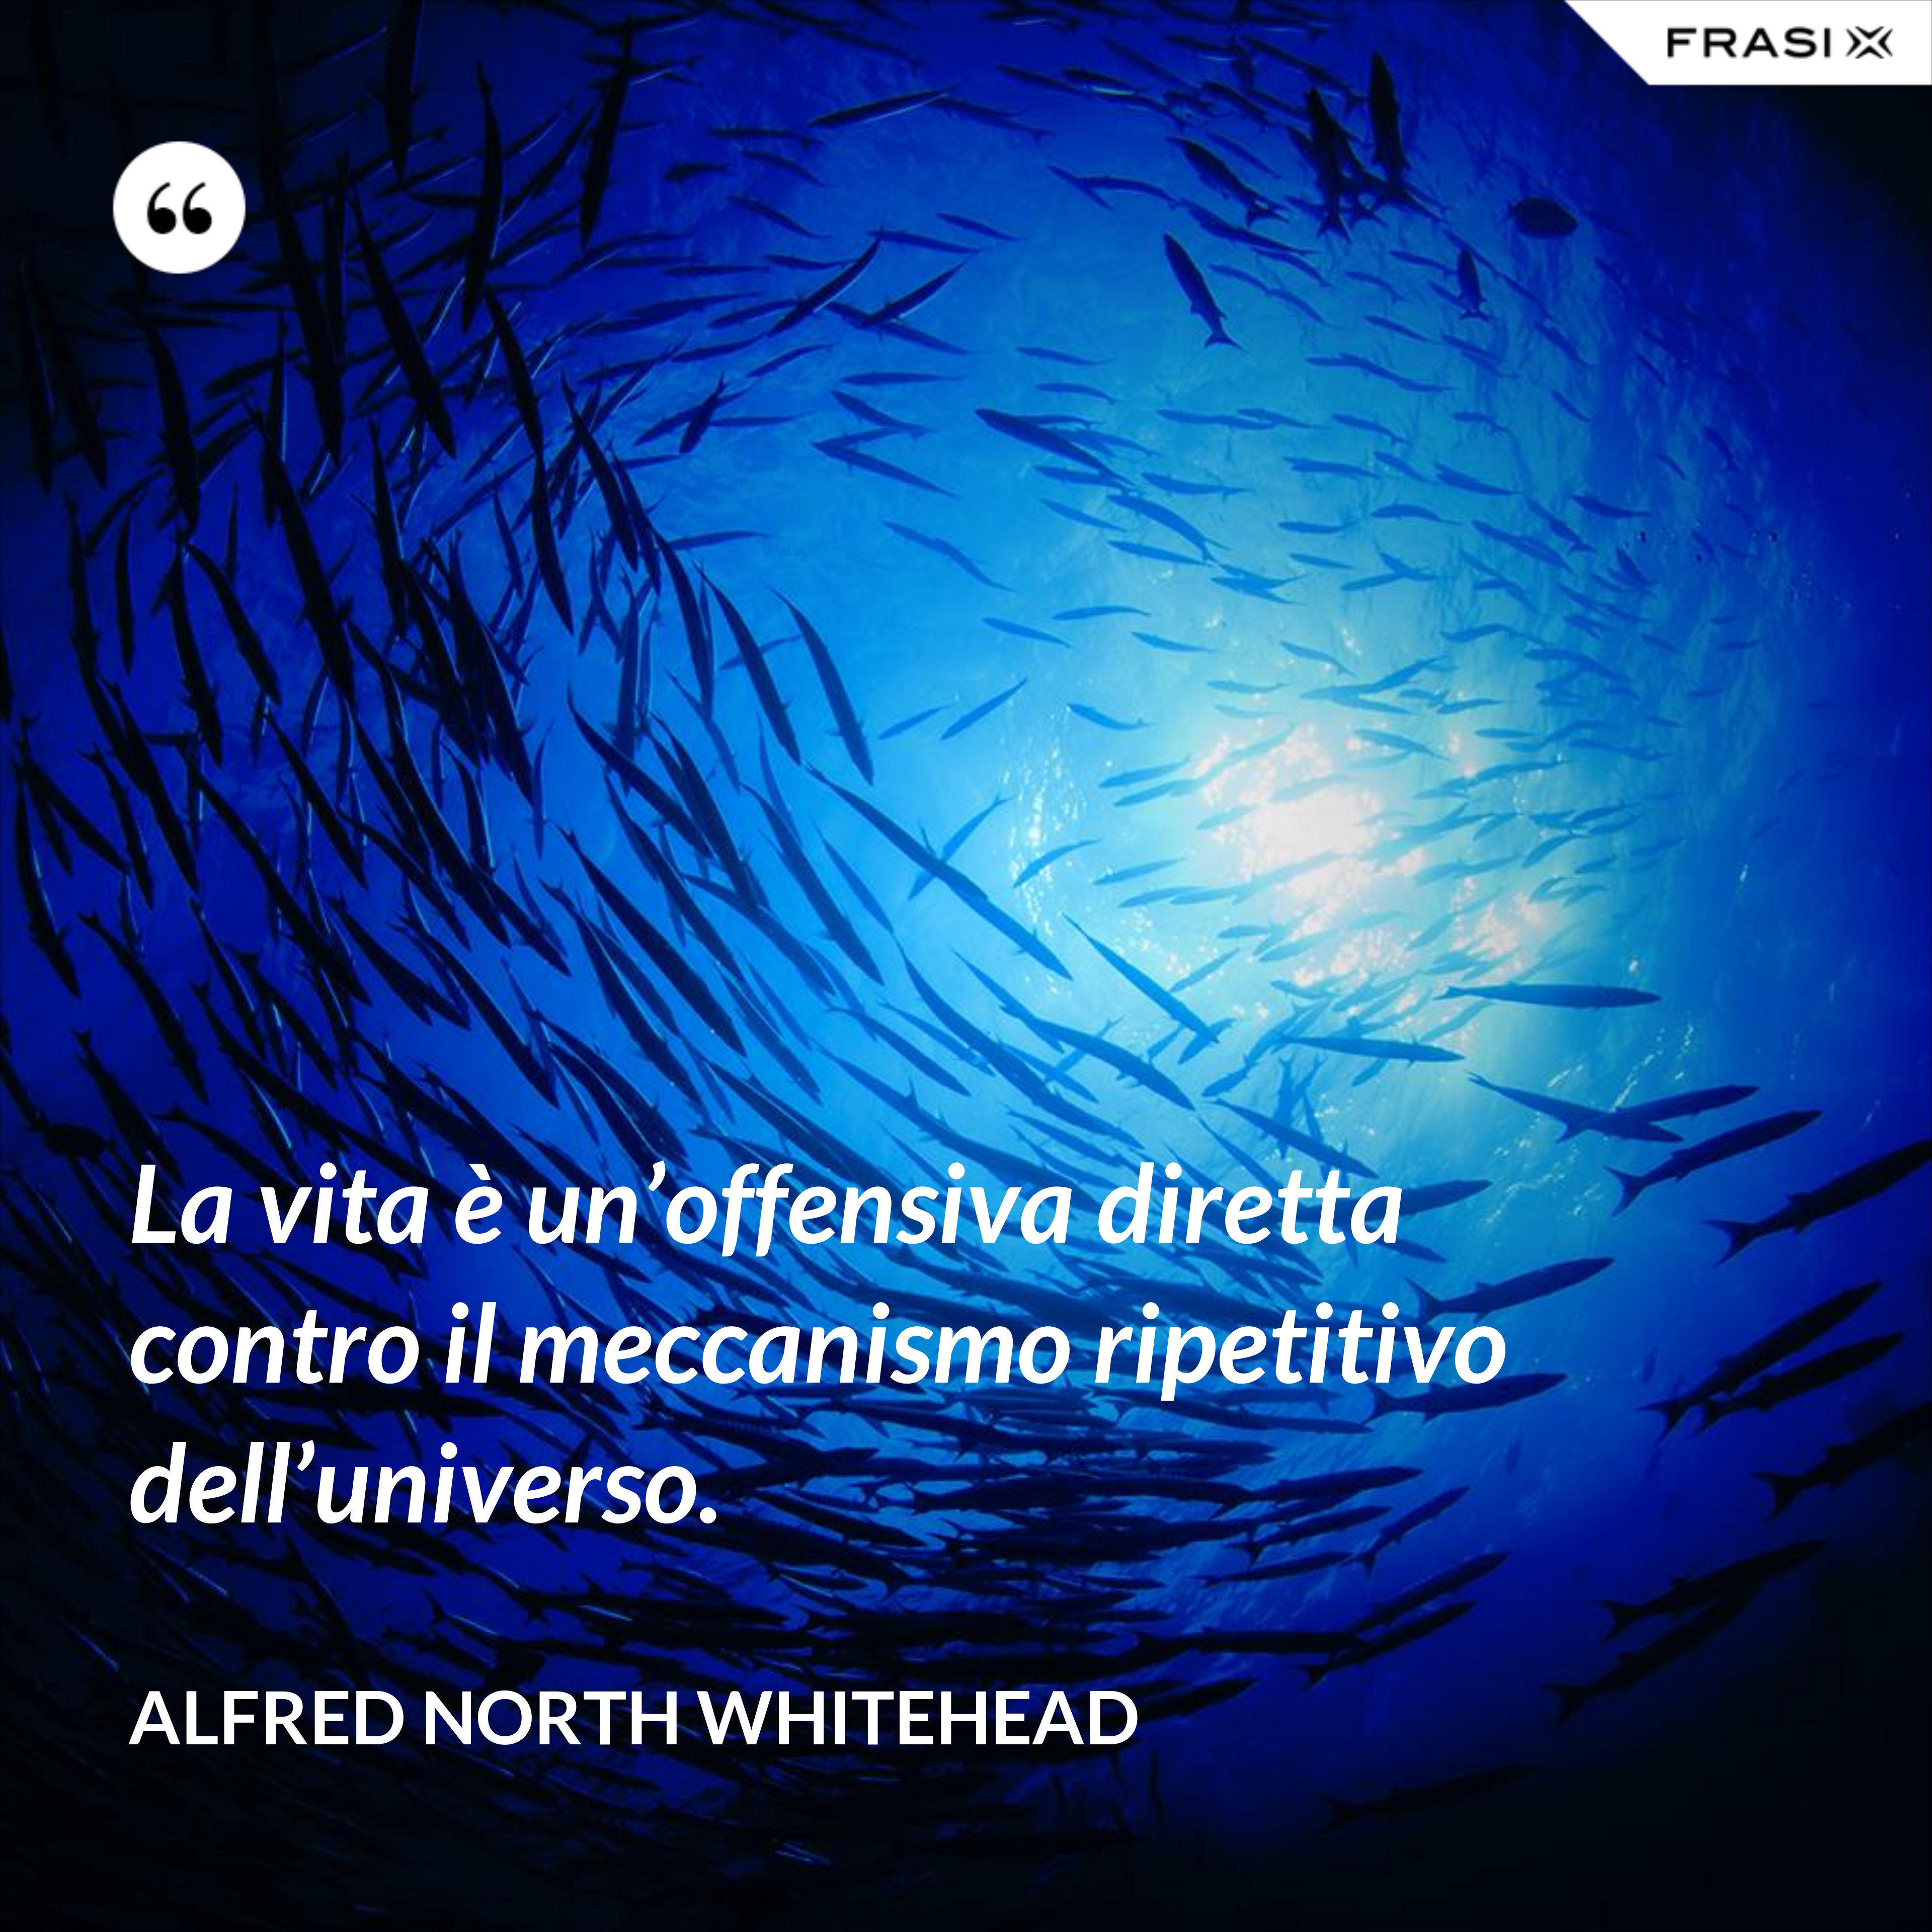 La vita è un’offensiva diretta contro il meccanismo ripetitivo dell’universo. - Alfred North Whitehead